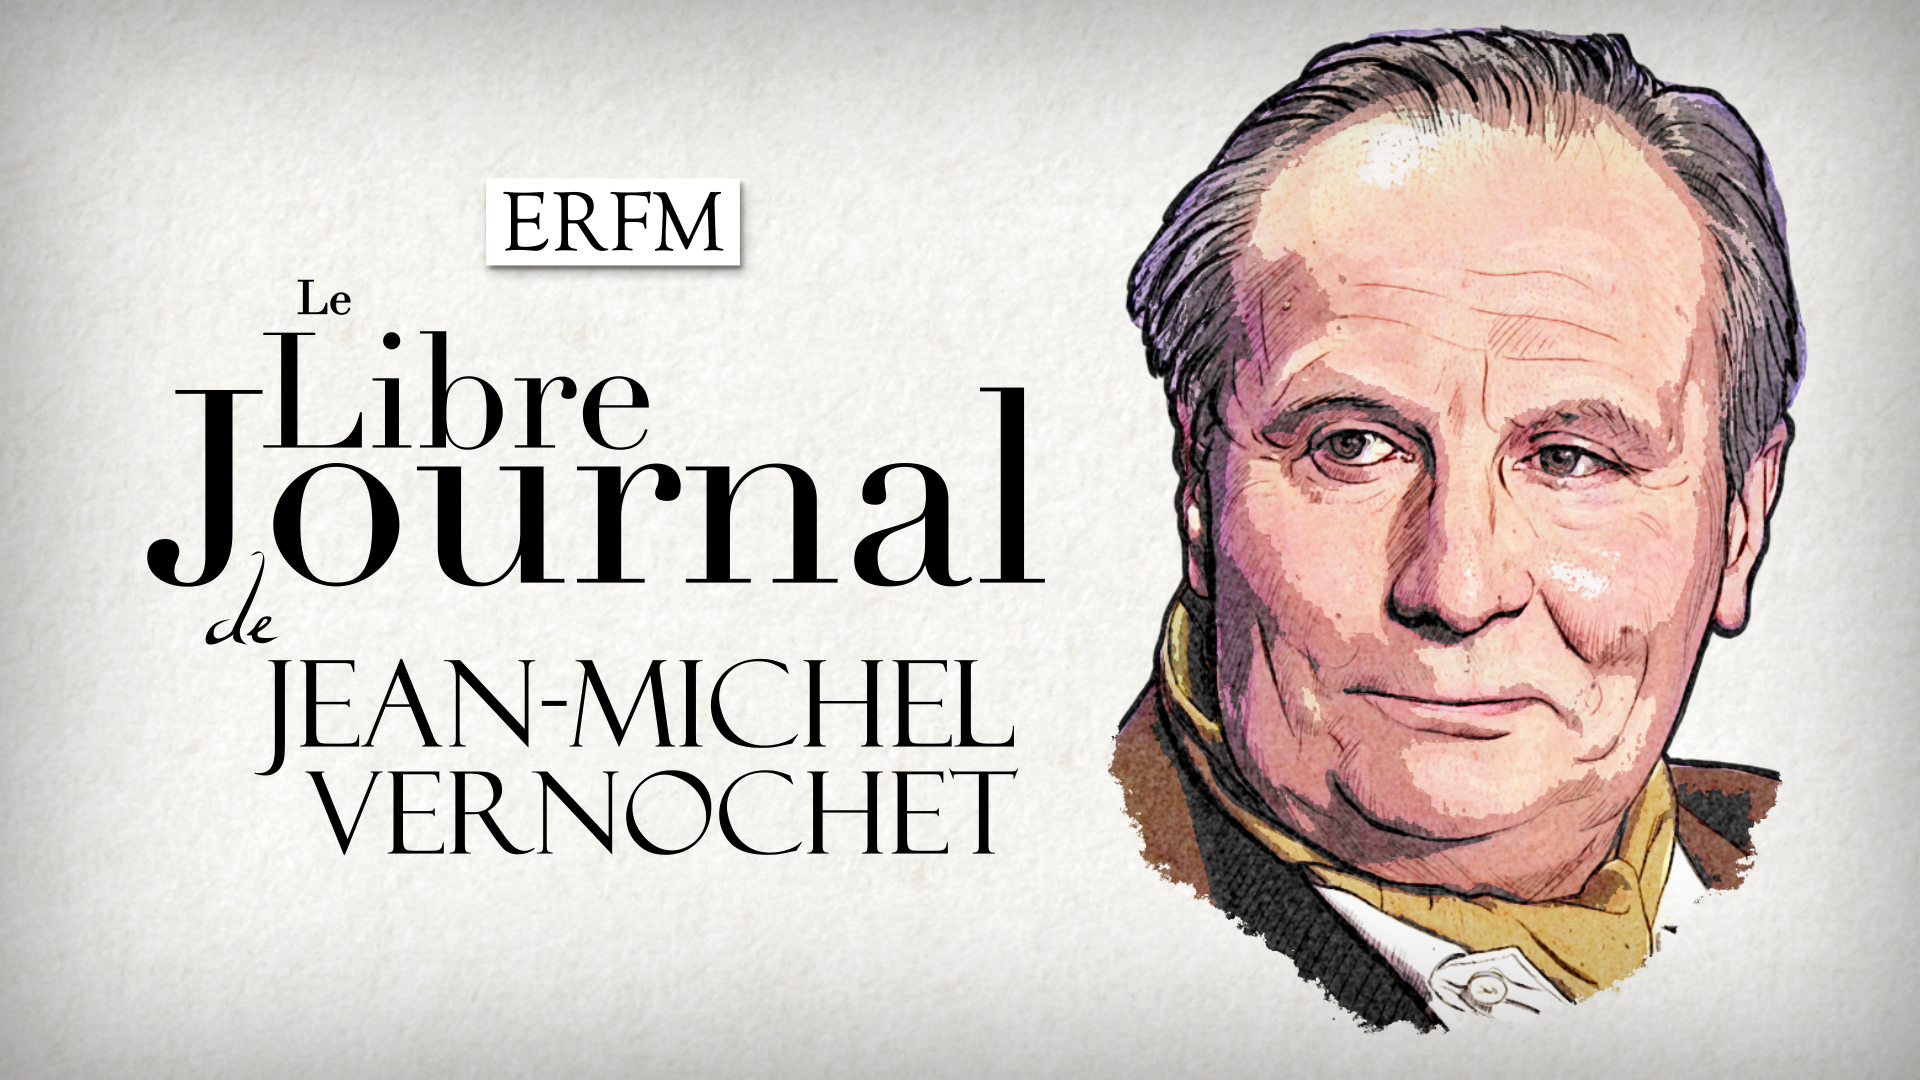 Le libre journal de Jean-Michel Vernochet n°80 : L’Empire du mensonge et l’exploration lunaire, avec Laurent Guyénot – Émission du 10 septembre 2022